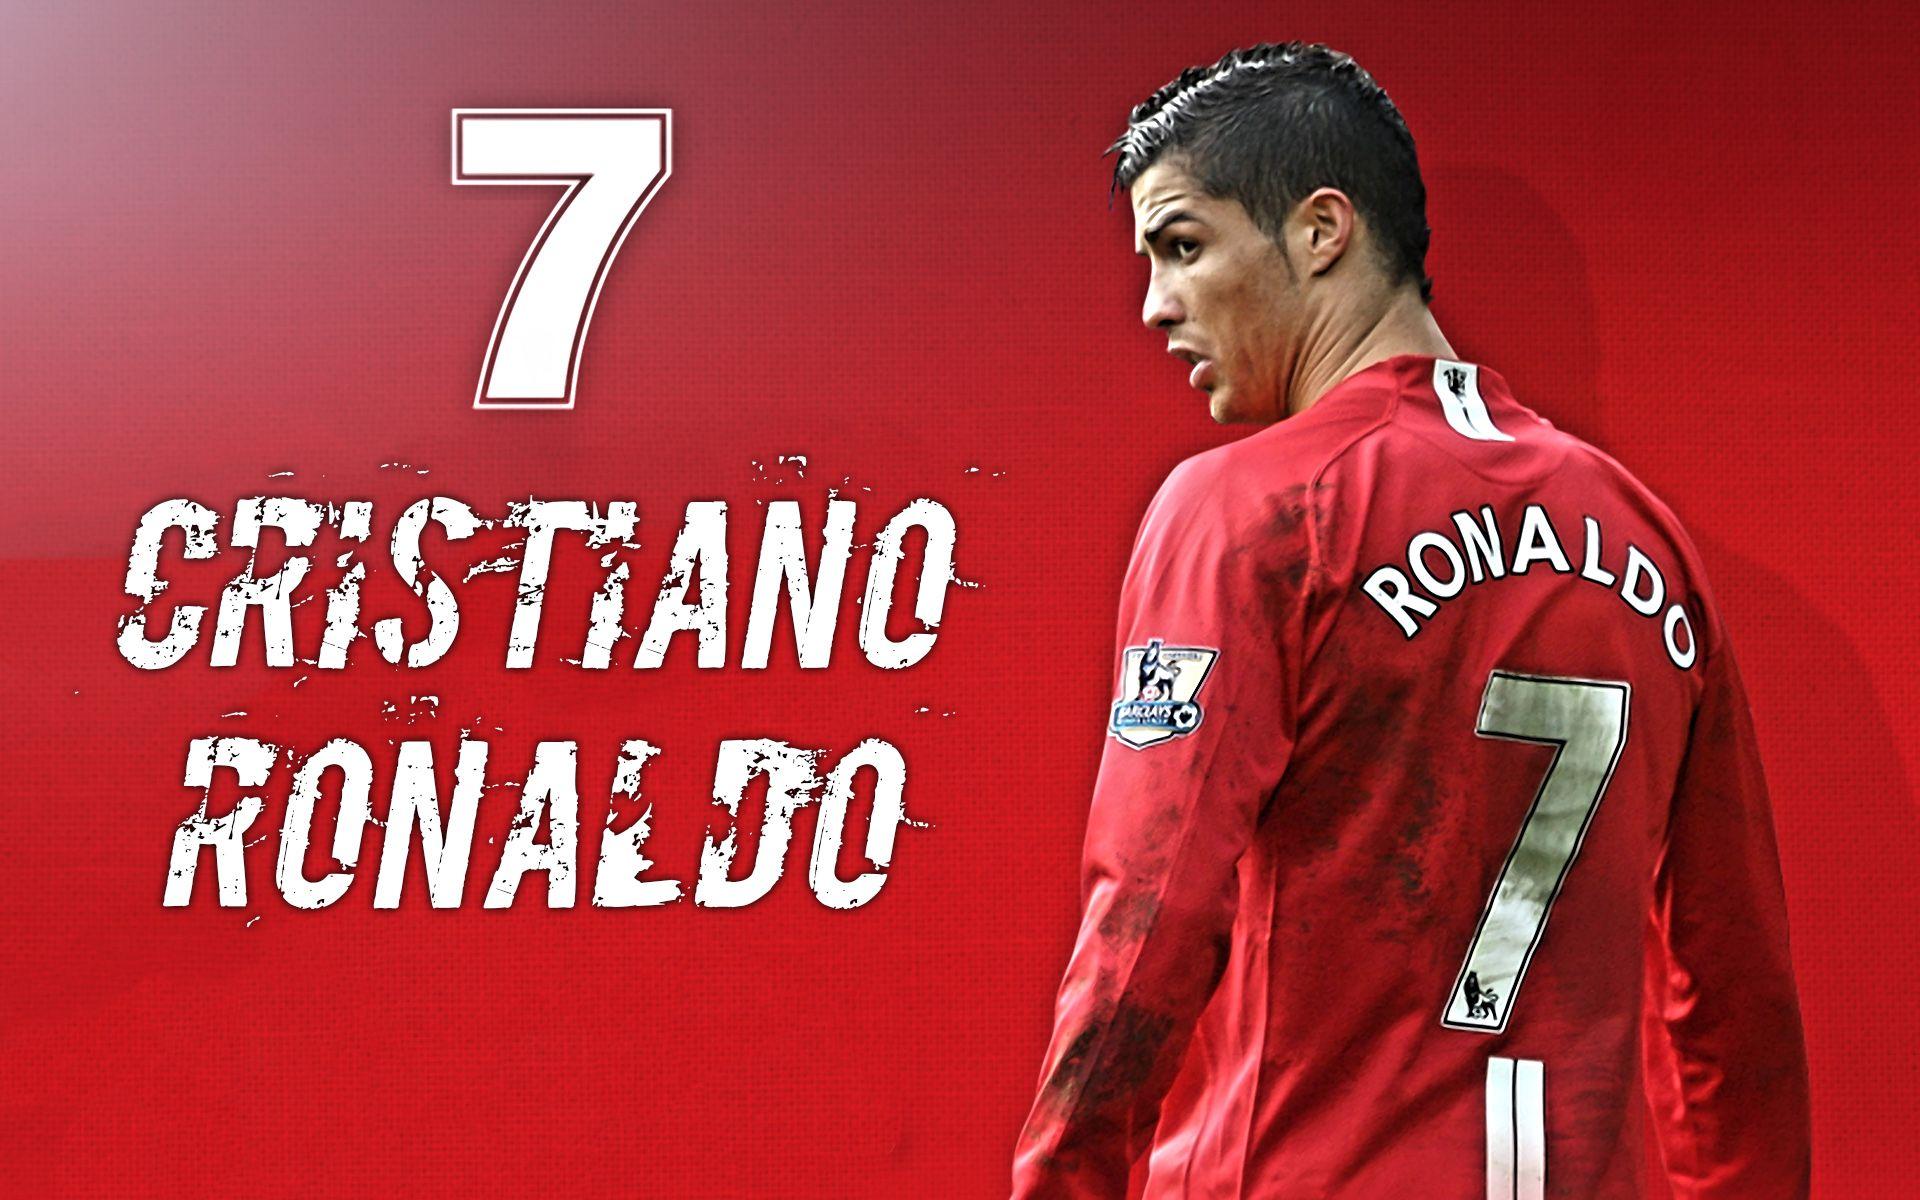 Cristiano Ronaldo Manchester United No. 7 Wallpaper free desktop